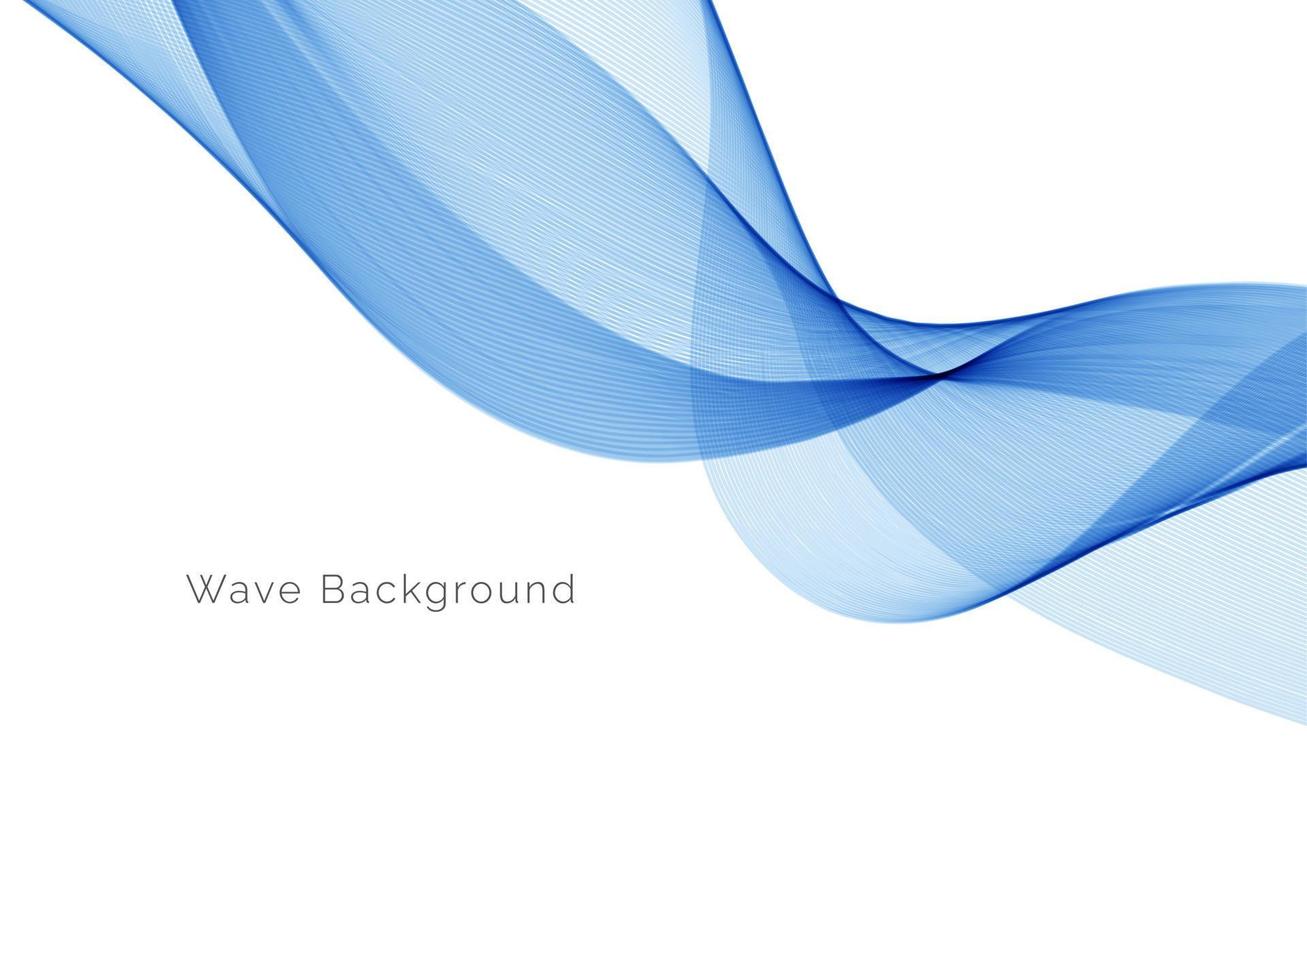 Fondo de diseño de onda dinámico moderno azul abstracto vector